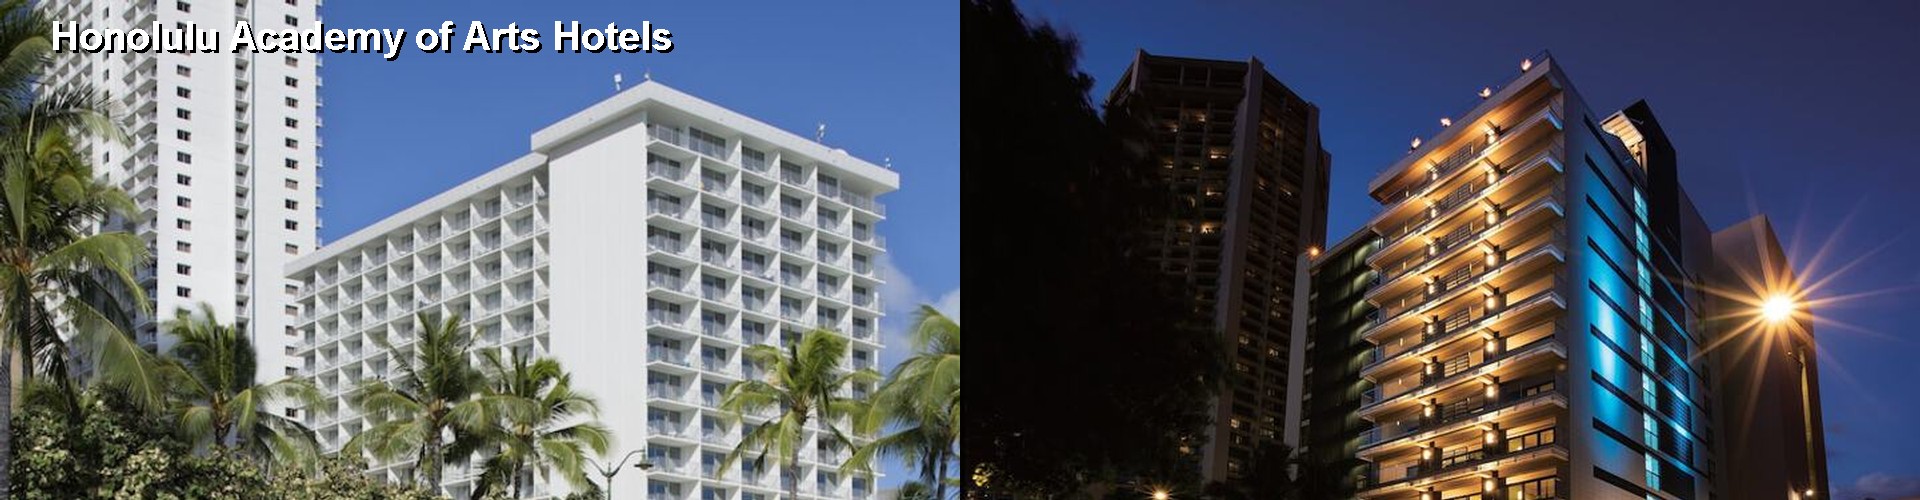 4 Best Hotels near Honolulu Academy of Arts